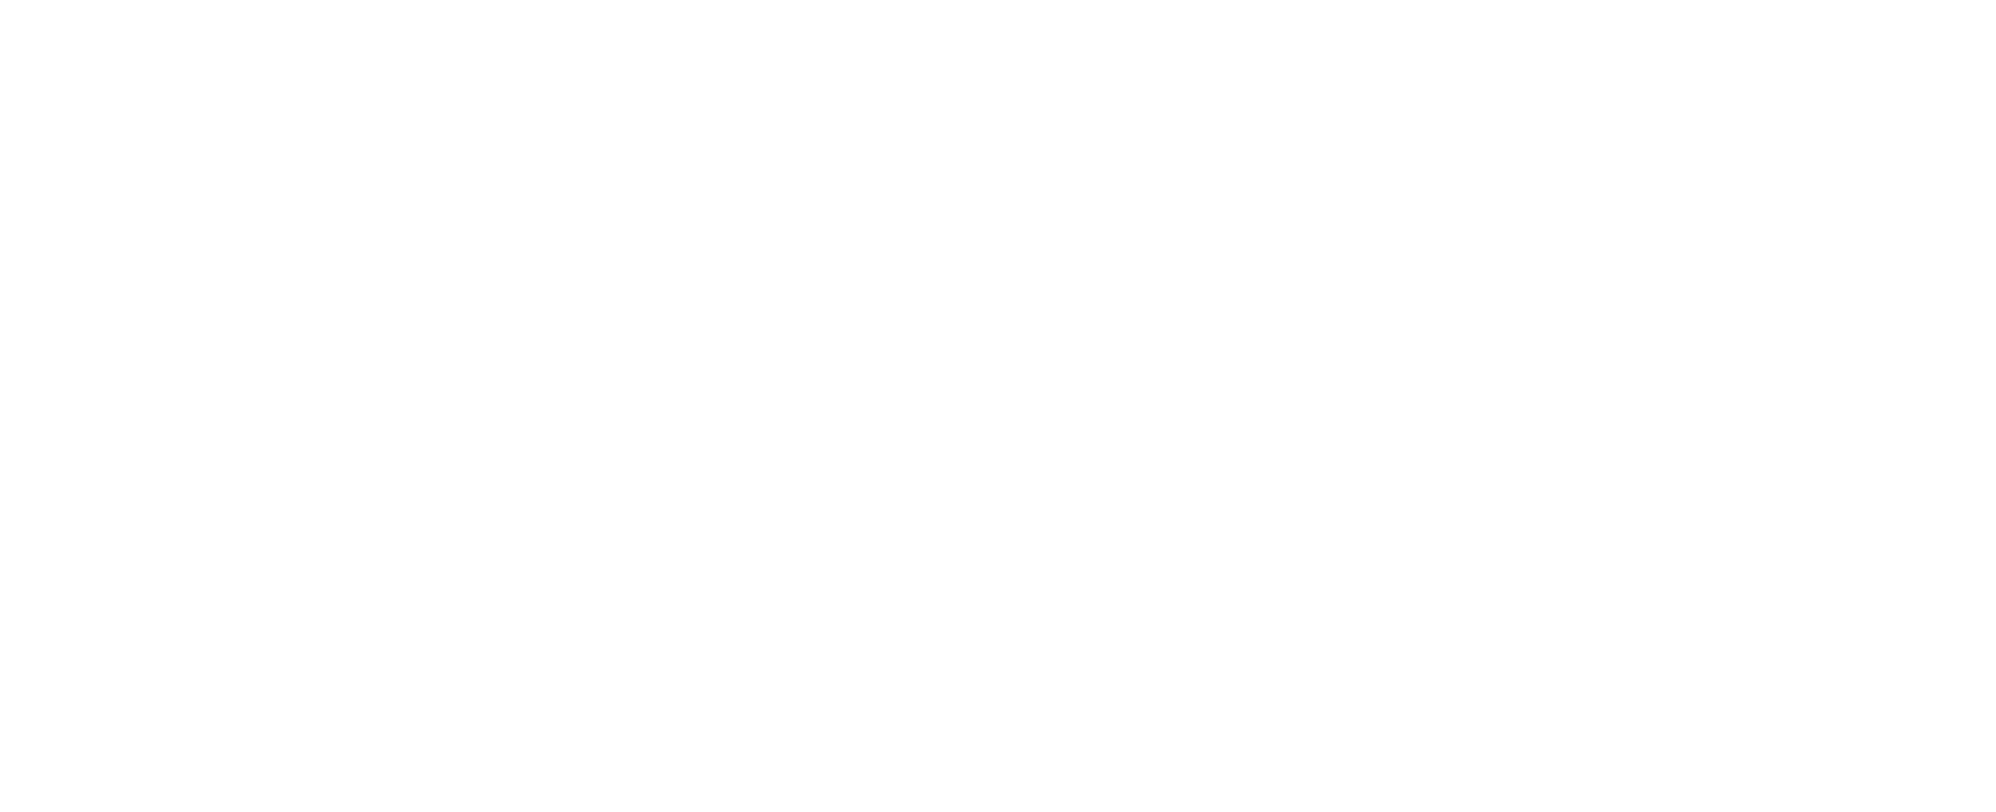 Pinch of Salt Studios